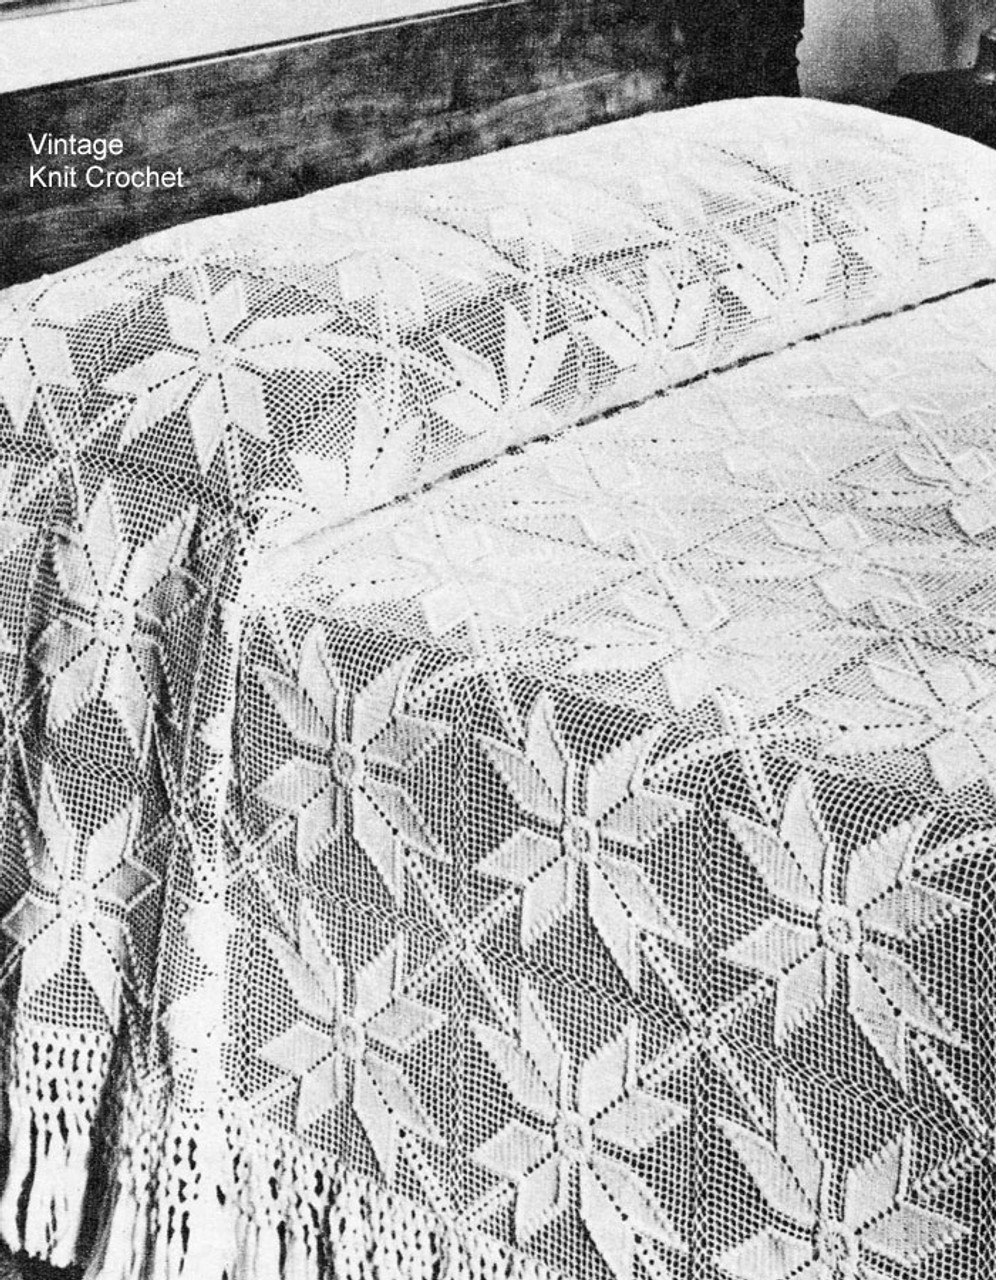 Vintage Star Crochet Bedspread Pattern